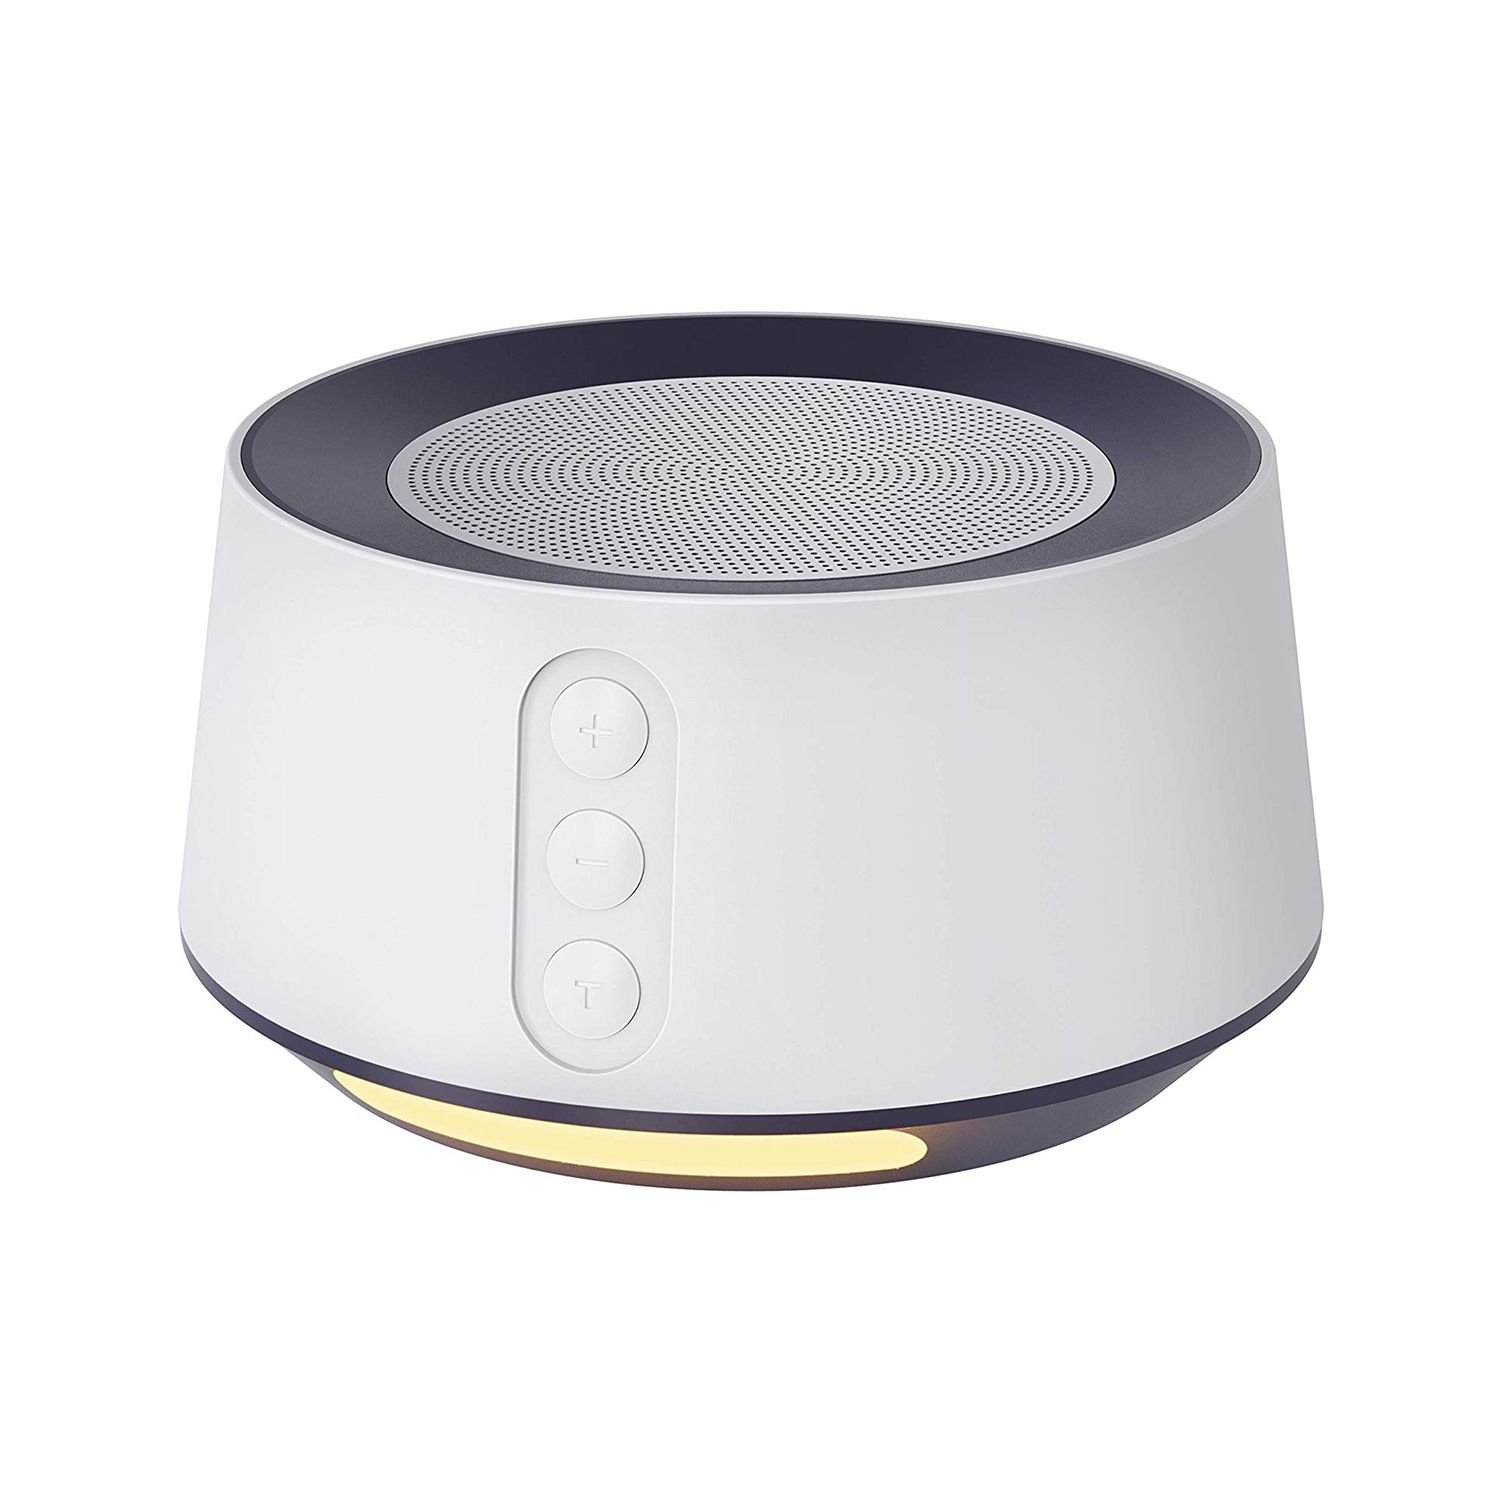 Οι αγοραστές της Amazon λένε ότι αυτό το λευκό μηχάνημα θορύβου είναι «απαραίτητο για έναν καλό ύπνο» και είναι μόνο 17 $ τώρα